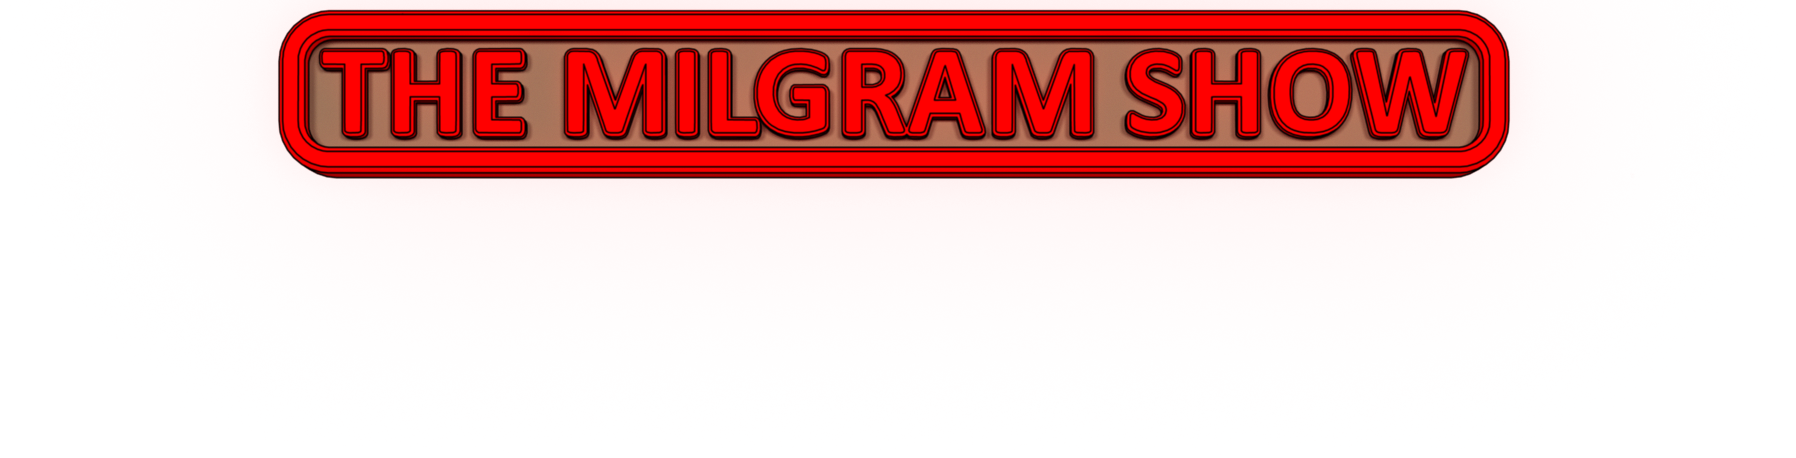 The Milgram Show